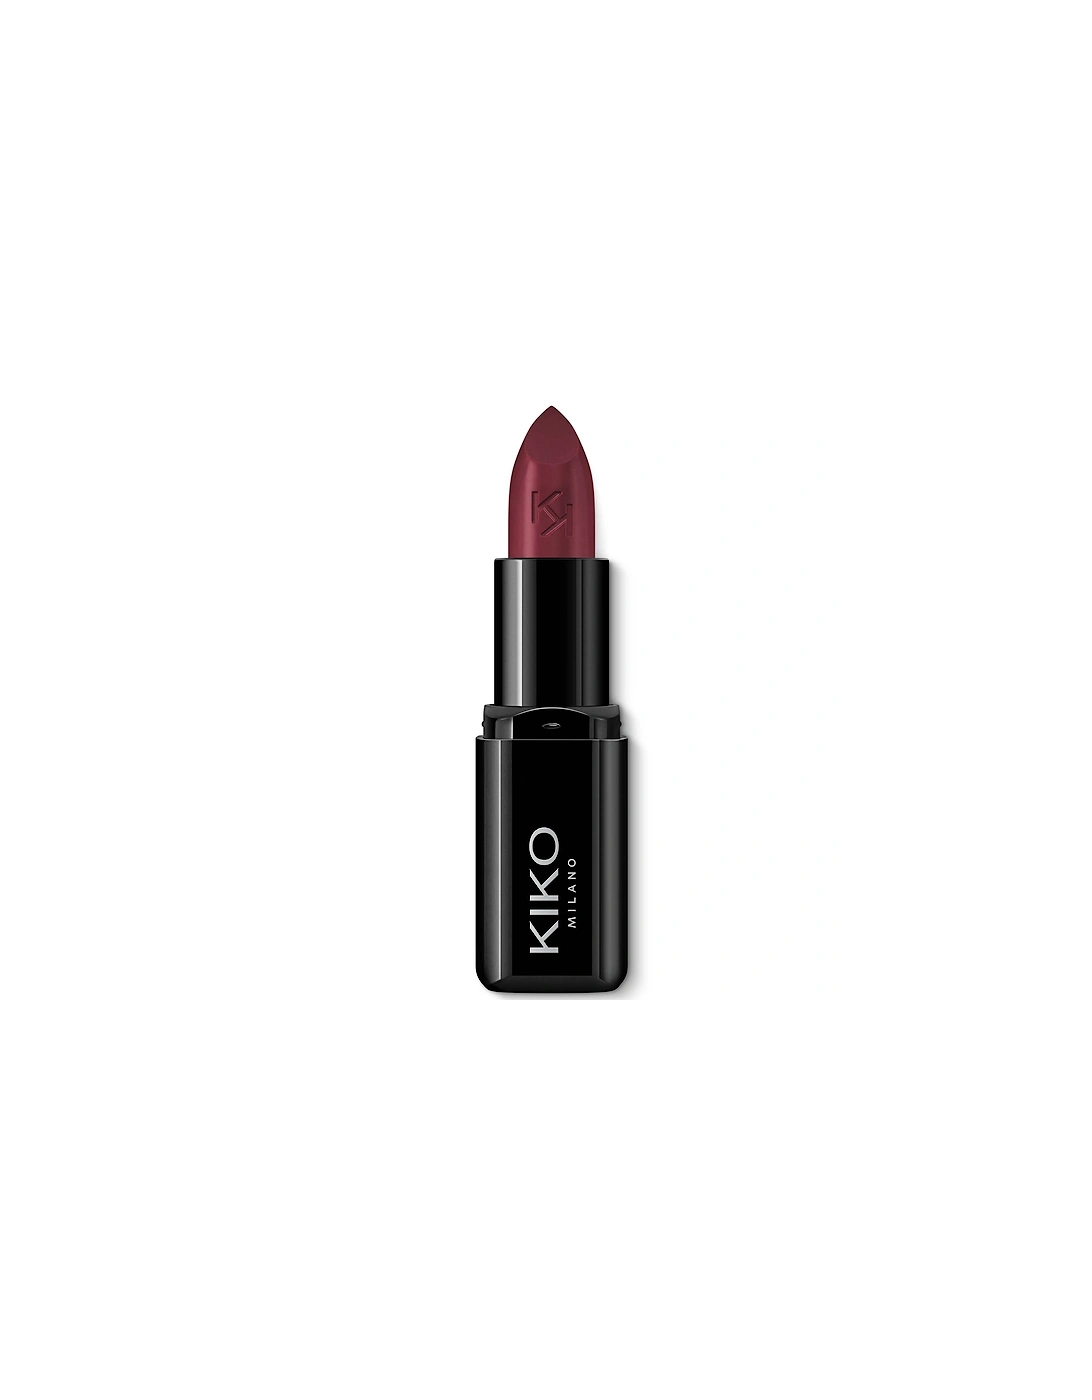 Smart Fusion Lipstick - 417 Bordeaux, 2 of 1